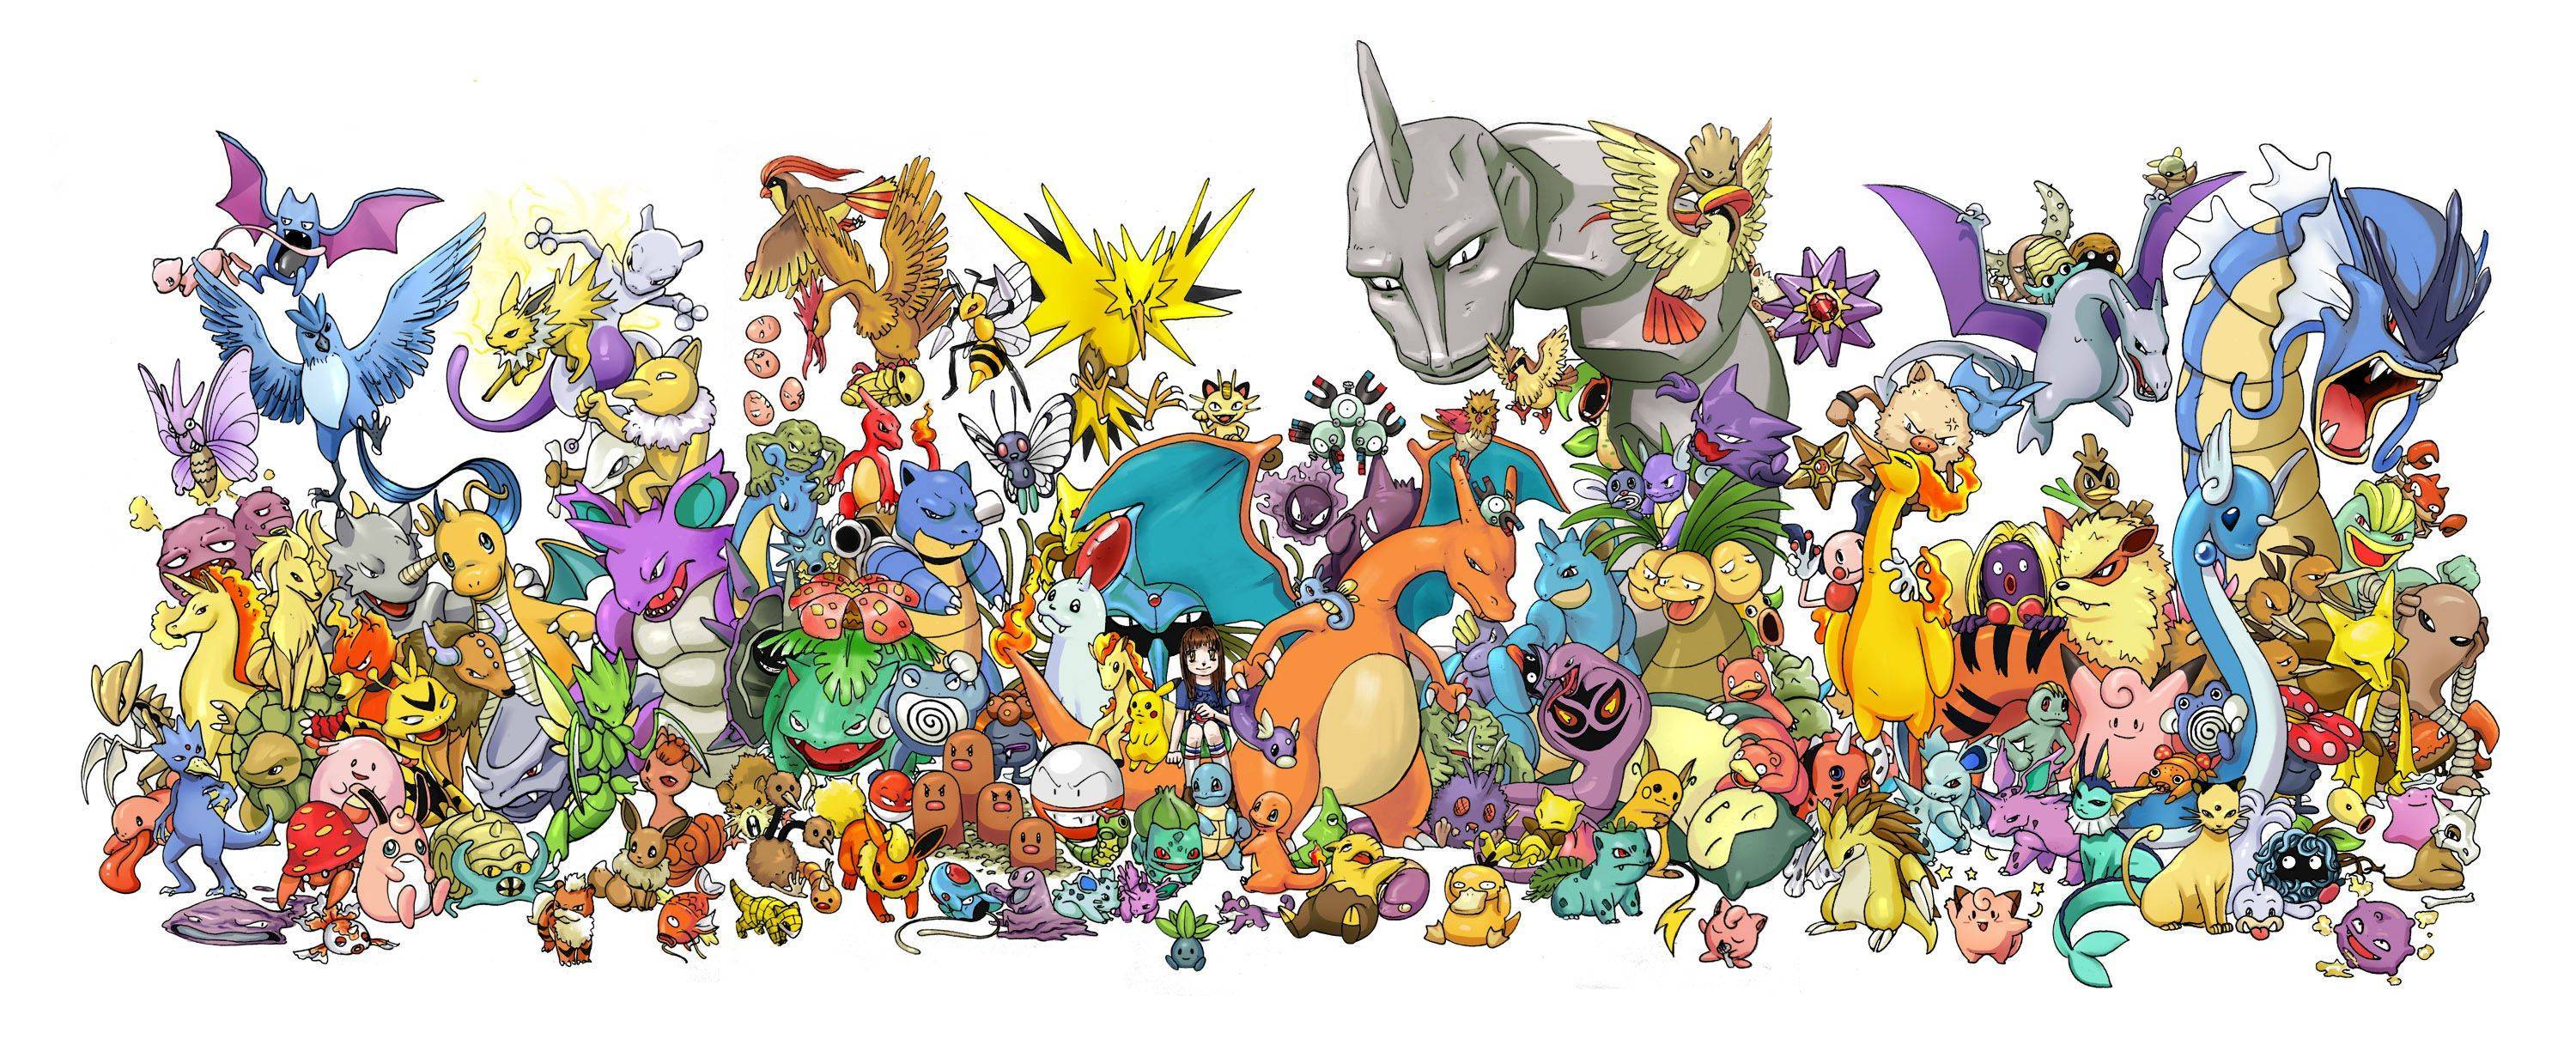 Wallpaper For Original Pokemon